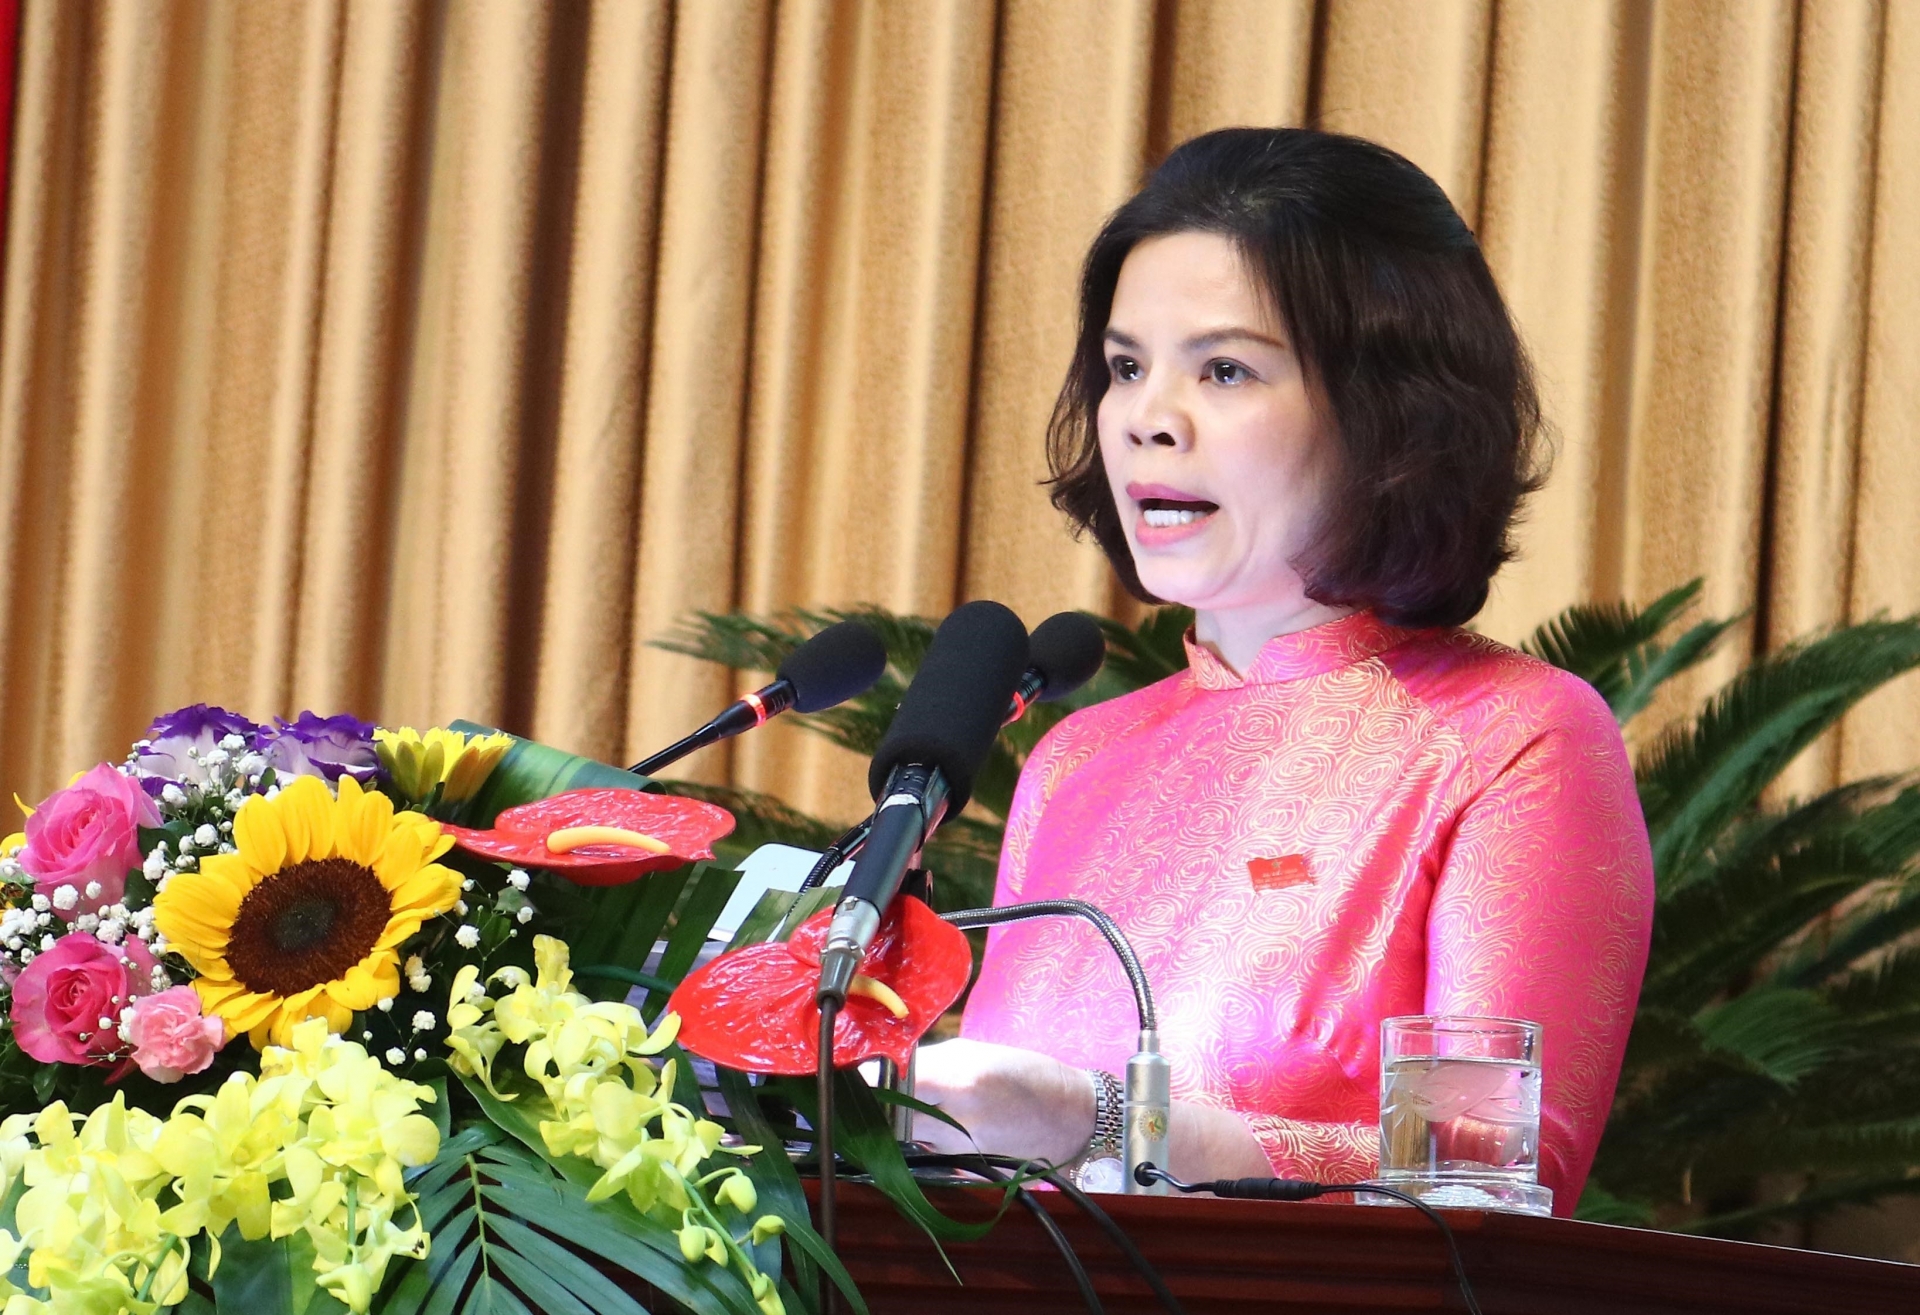 Nữ Chủ tịch UBND Bắc Ninh đã tạo nên bước ngoặc lịch sử trong lịch sử đất nước. Với tinh thần quyết tâm và năng động, bà đã đưa Bắc Ninh trở thành khu vực phát triển đáng sống nhất của Việt Nam. Hãy xem ảnh để khám phá thêm về những đóng góp của Nữ Chủ tịch UBND Bắc Ninh cho vùng đất này.